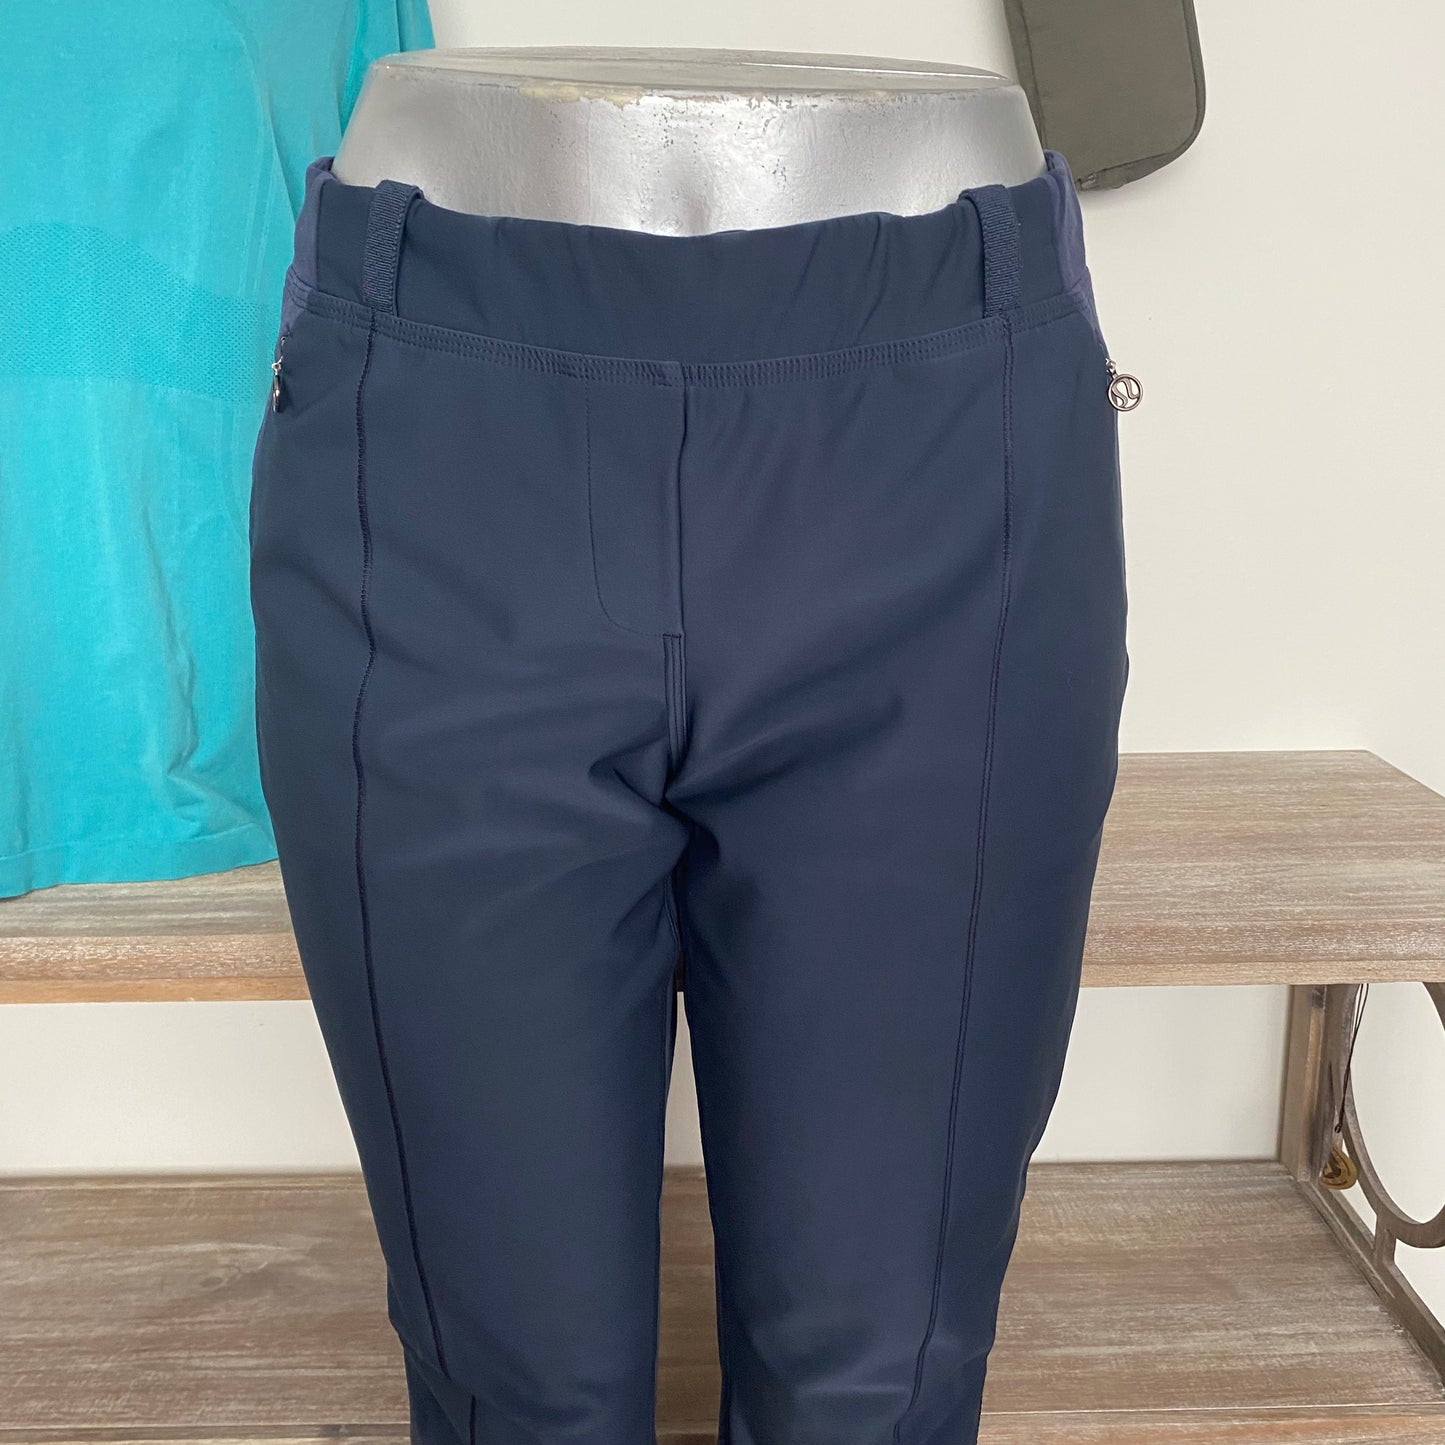 Rare Lululemon Lined Pants Size 12 - Love it again boutique